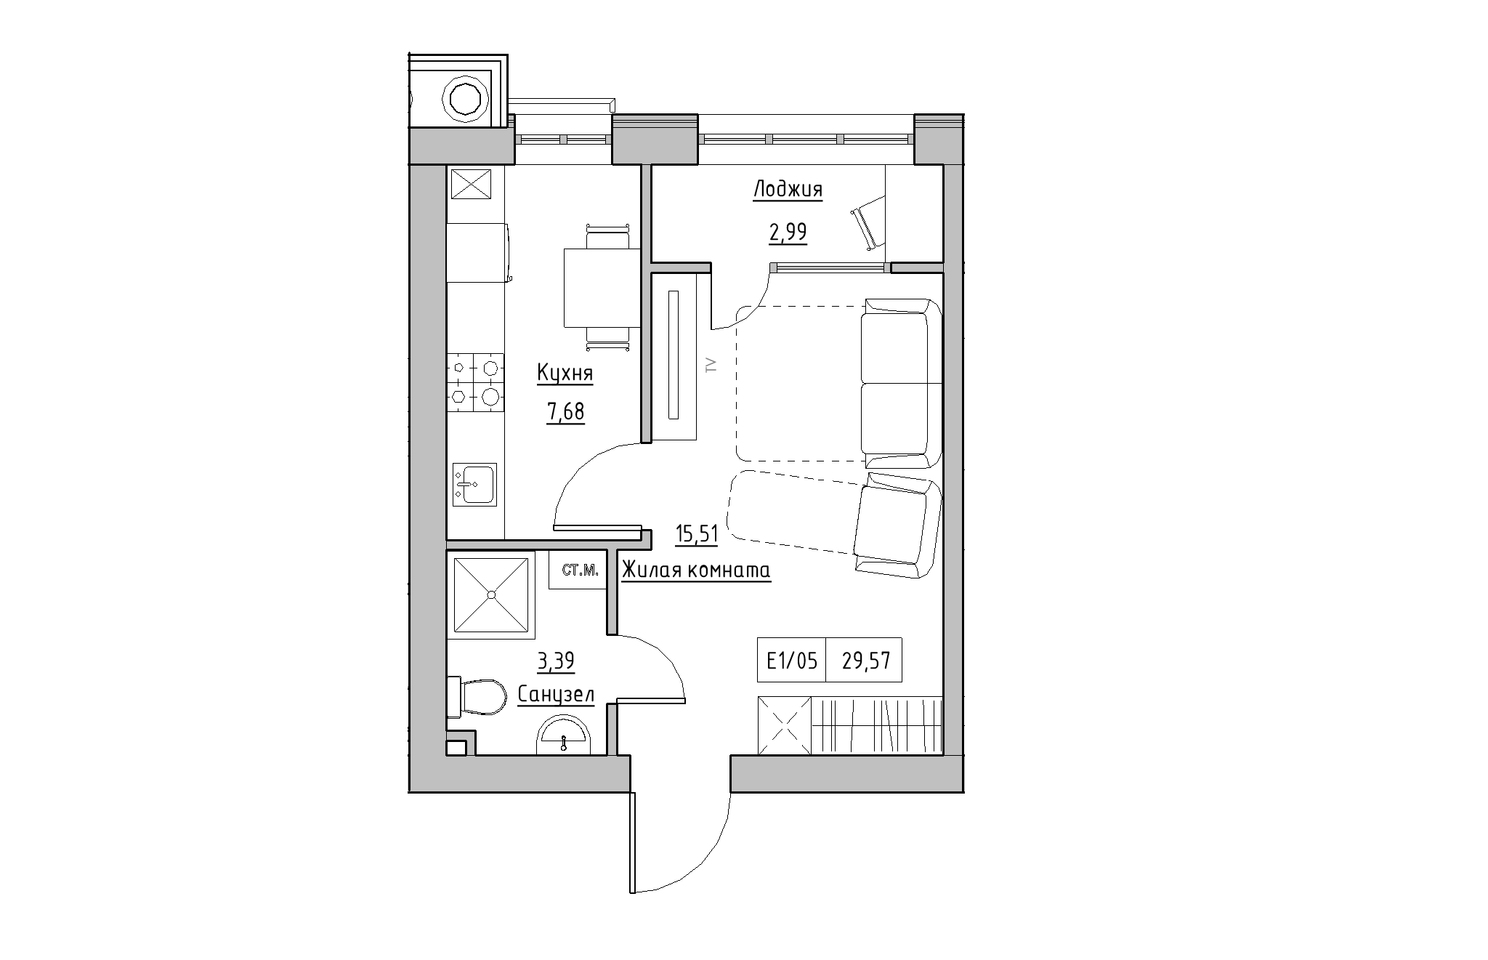 Планування 1-к квартира площею 29.57м2, KS-010-04/0006.